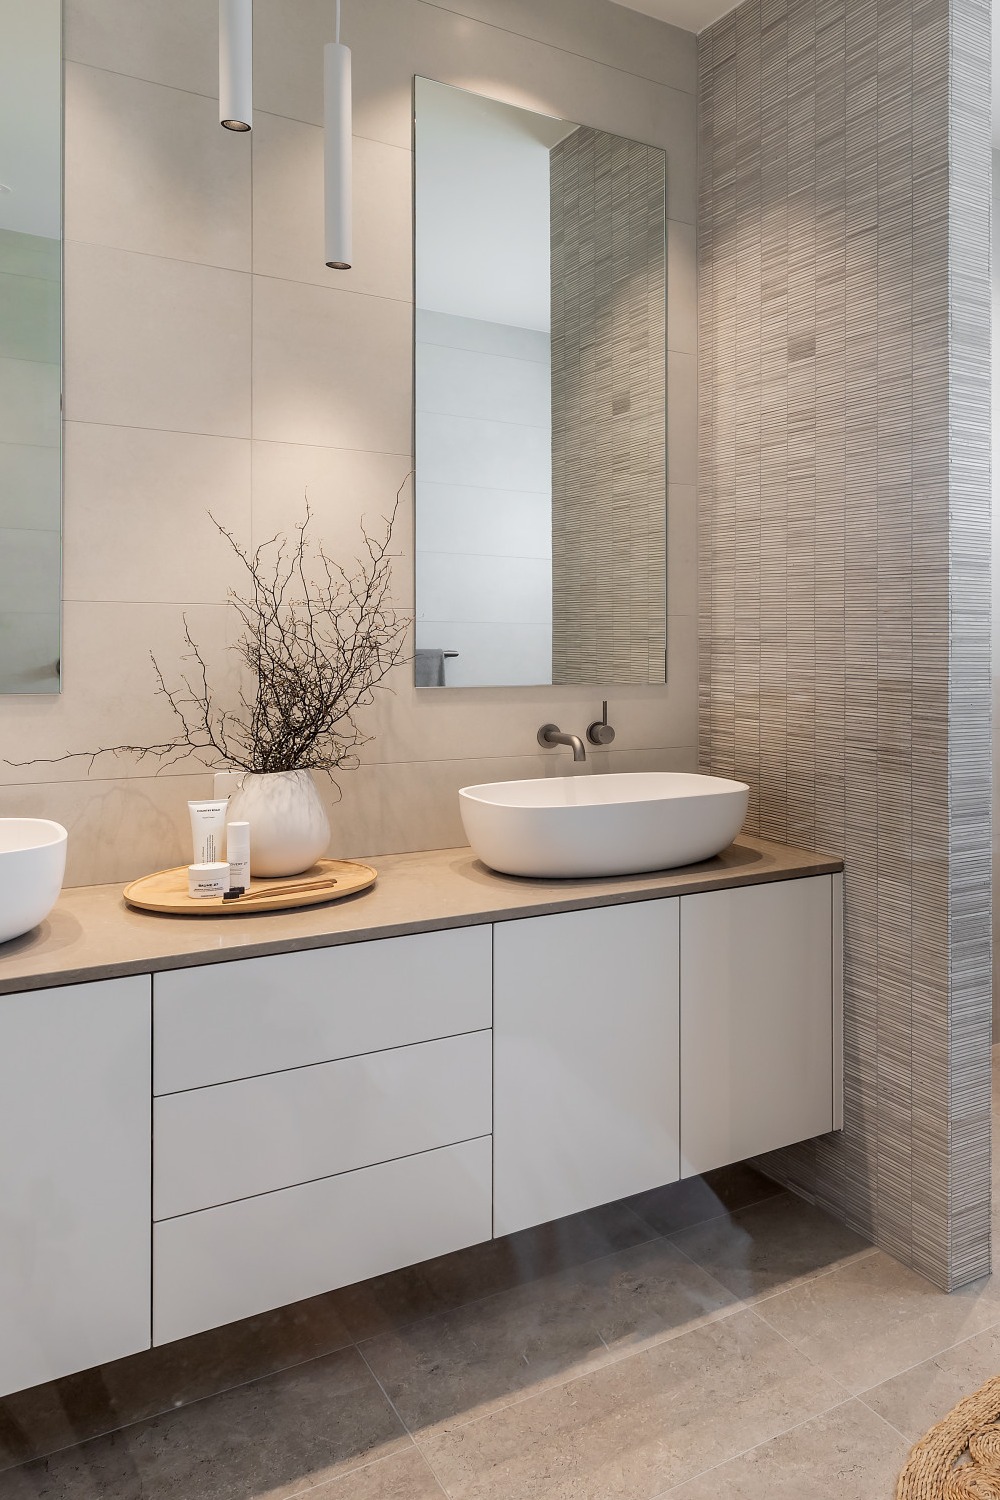 Shower Door Design Minimalist Accents Mirror Stone Sinks